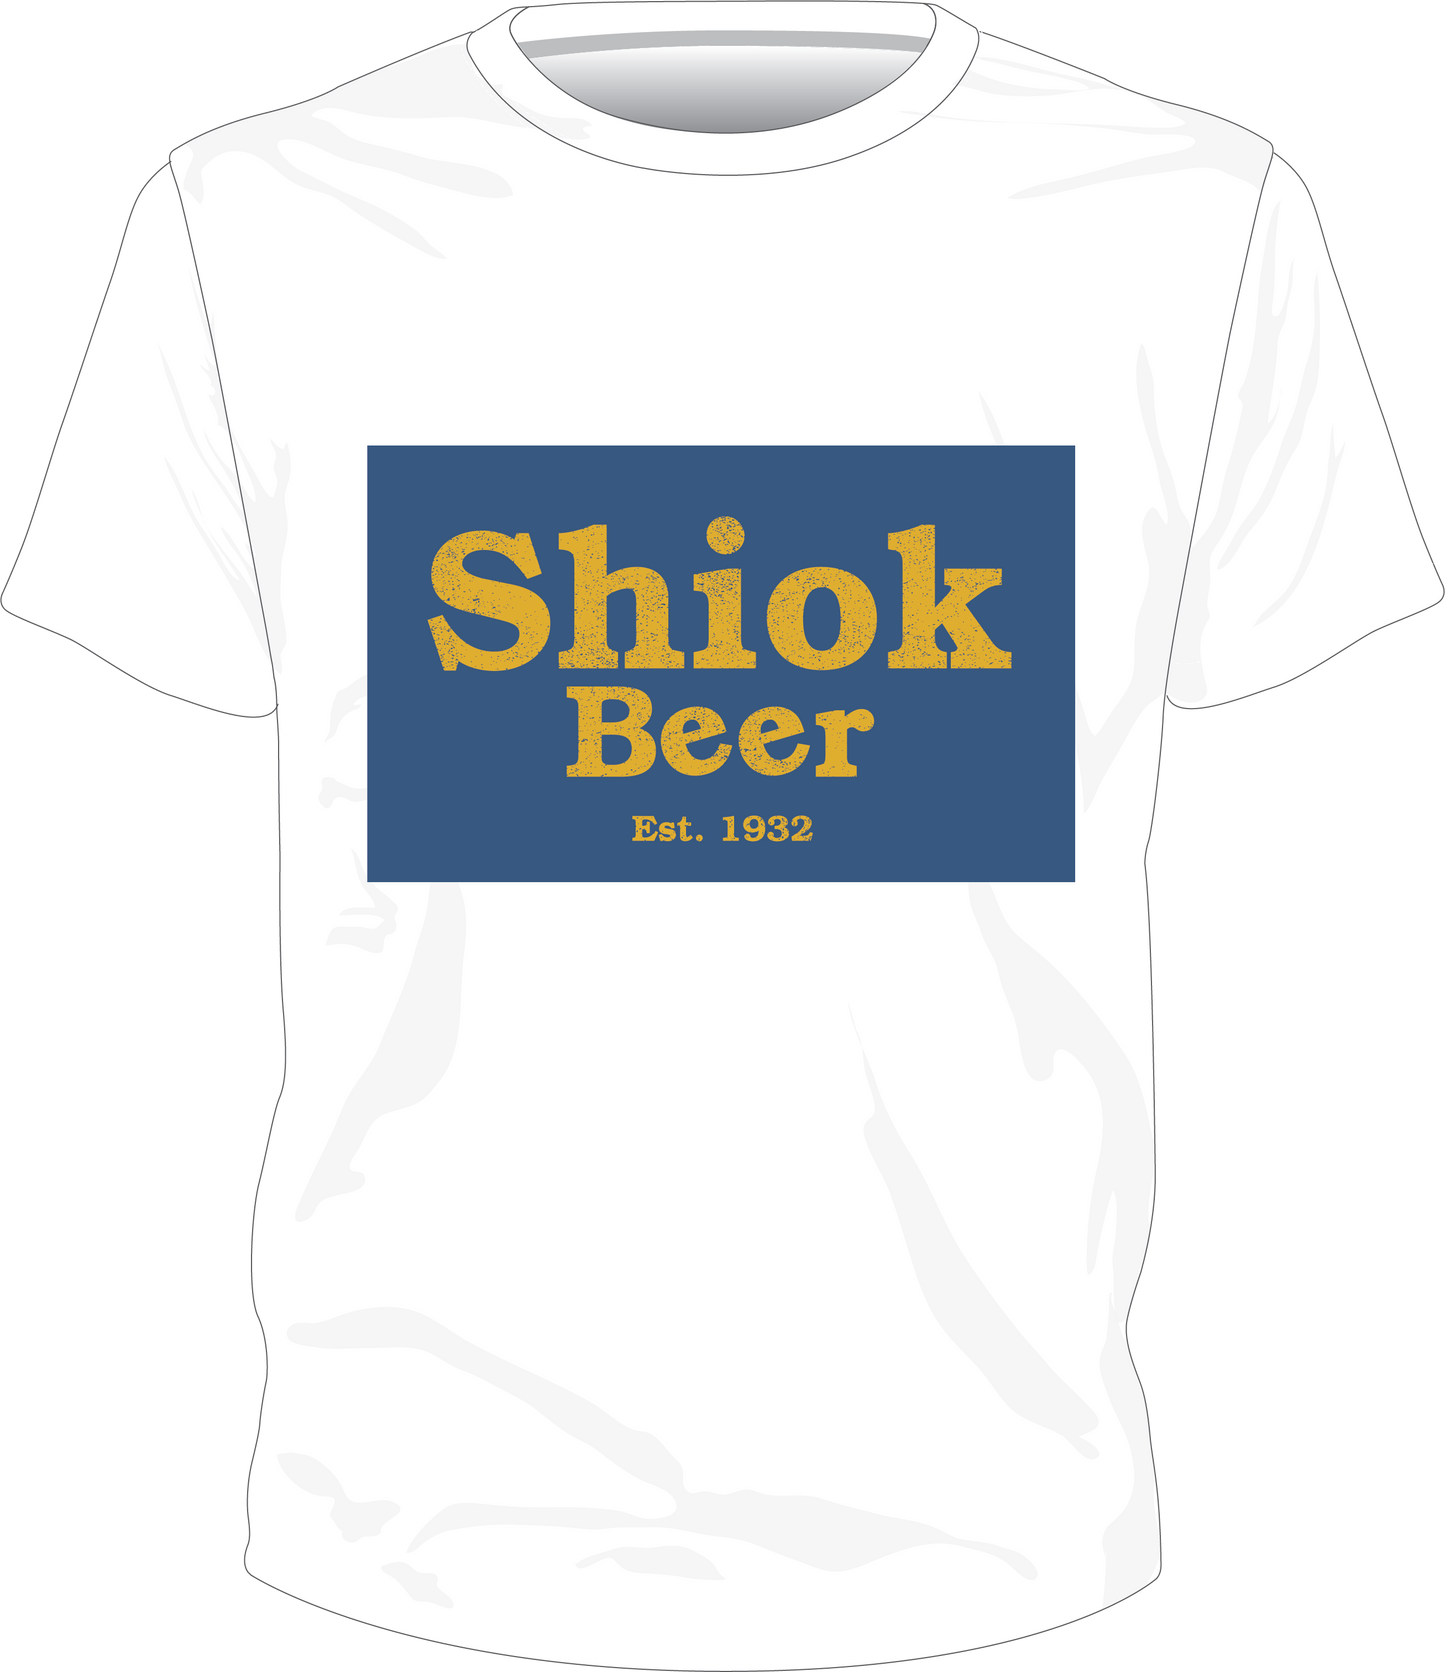 Shiok Beer